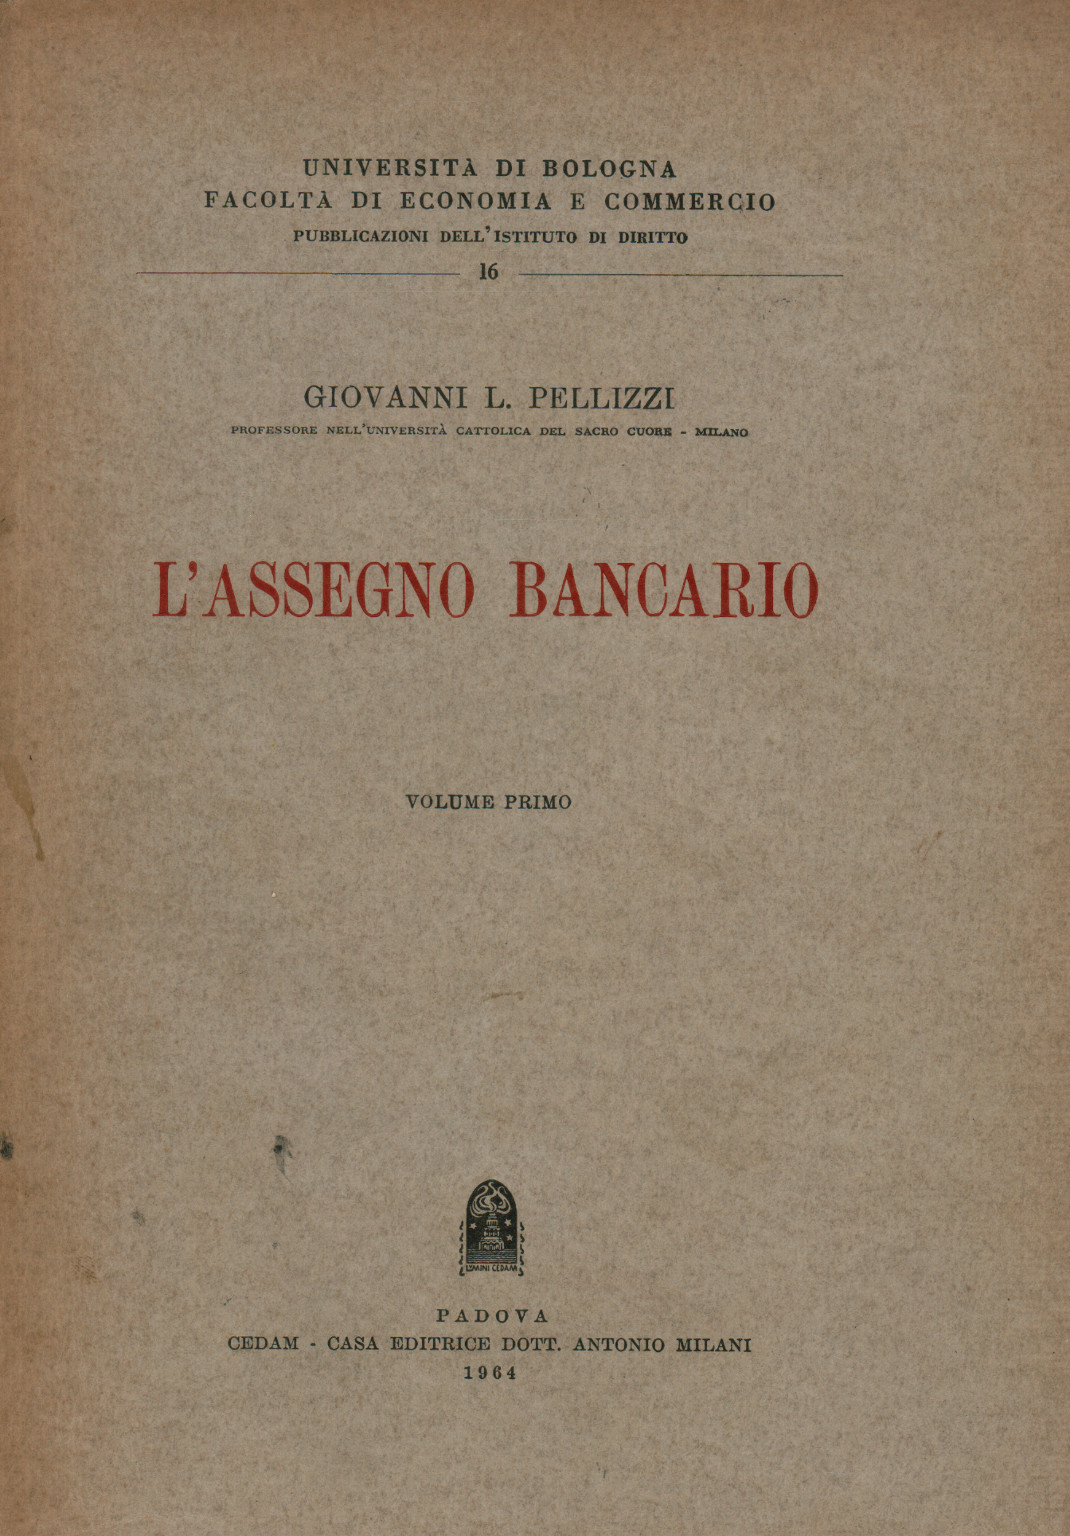 L Assegno bancario Volume primo, s.a.